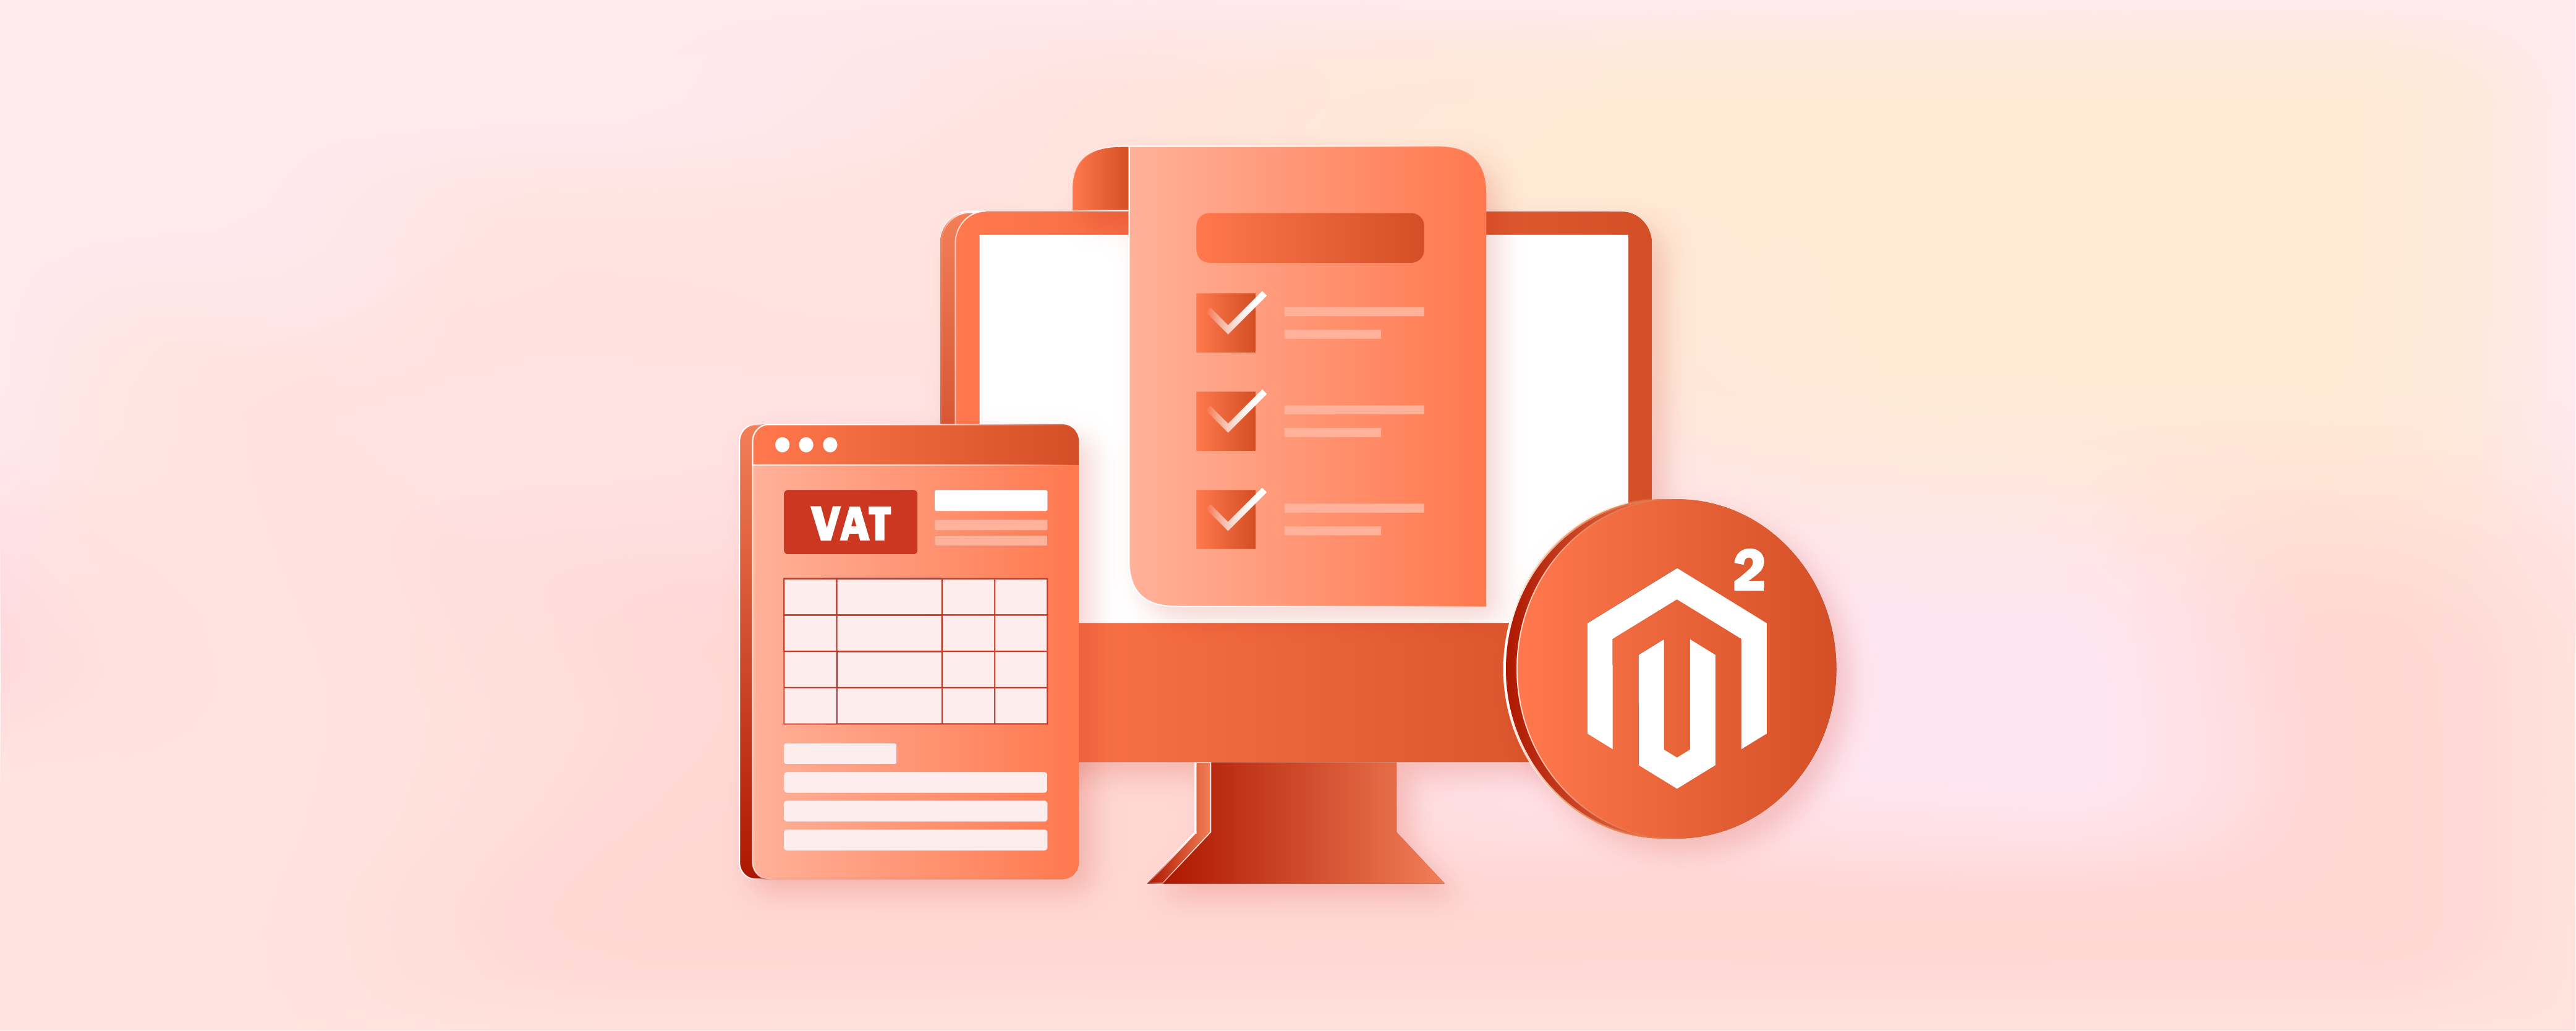 Magento 2 VAT Number Validation: 5 Configuration Steps